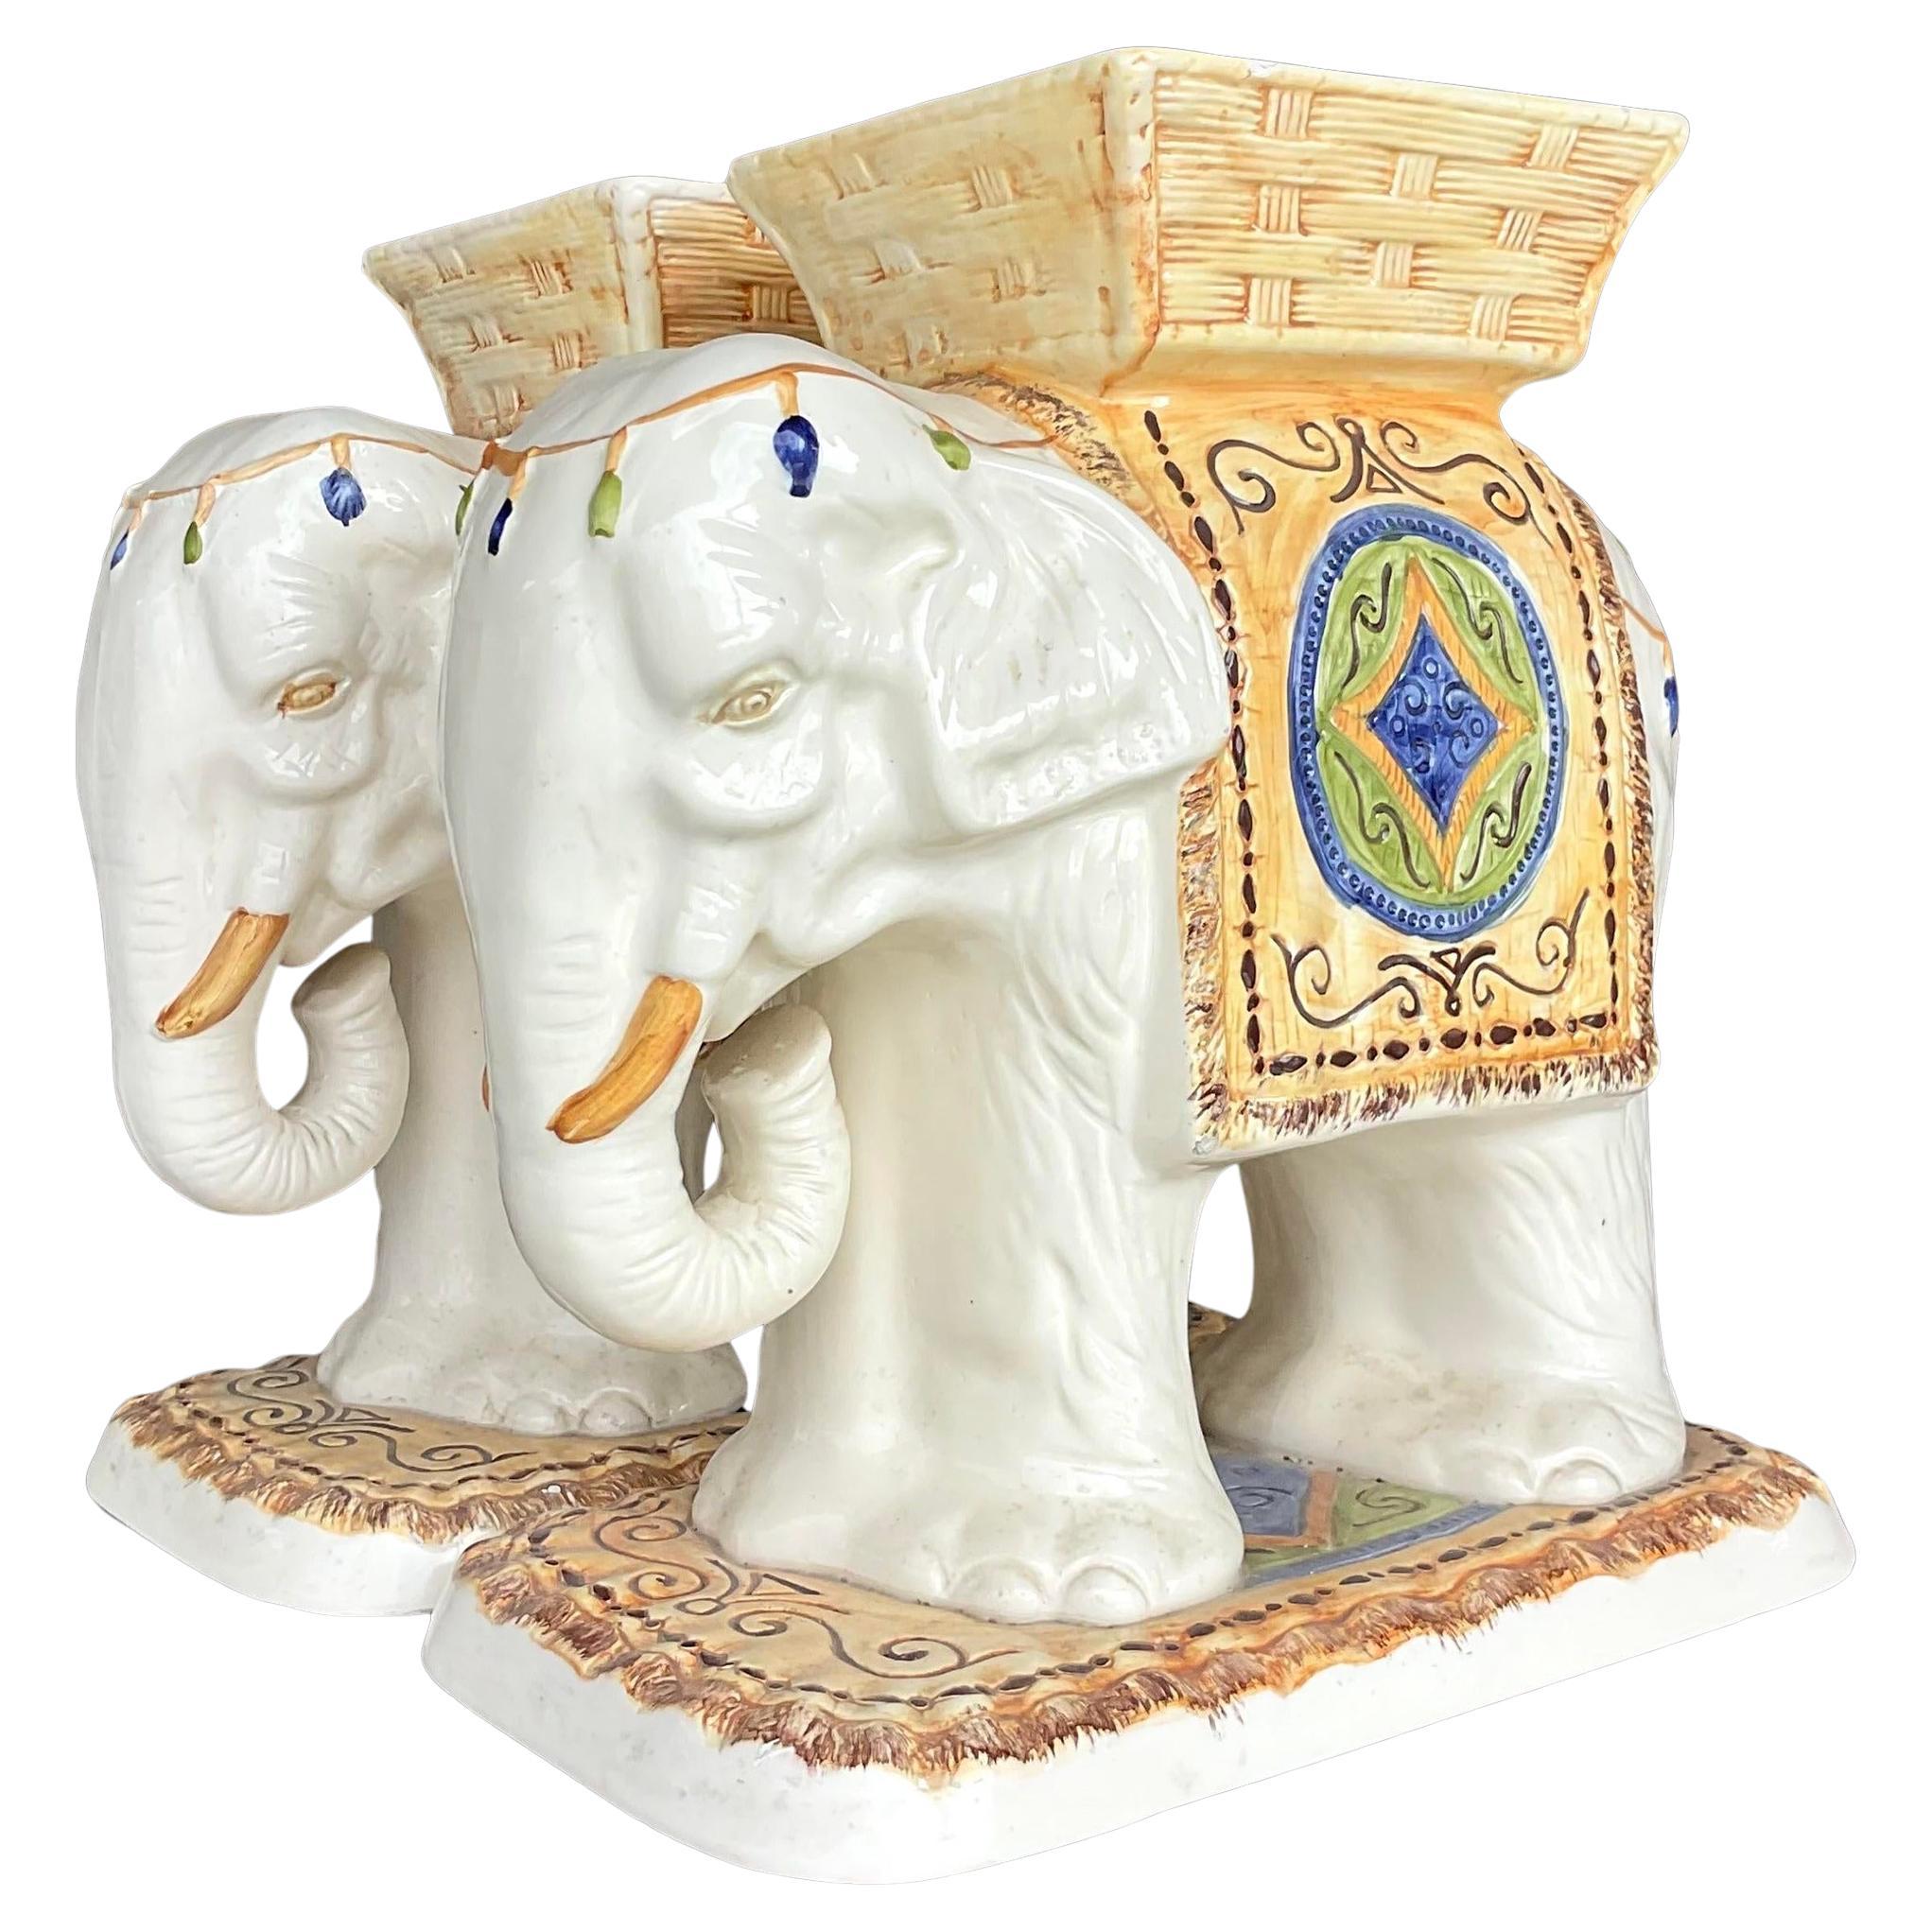 Vintage-Hocker aus glasierter Keramik mit Elefantenmotiv von Boho – ein Paar